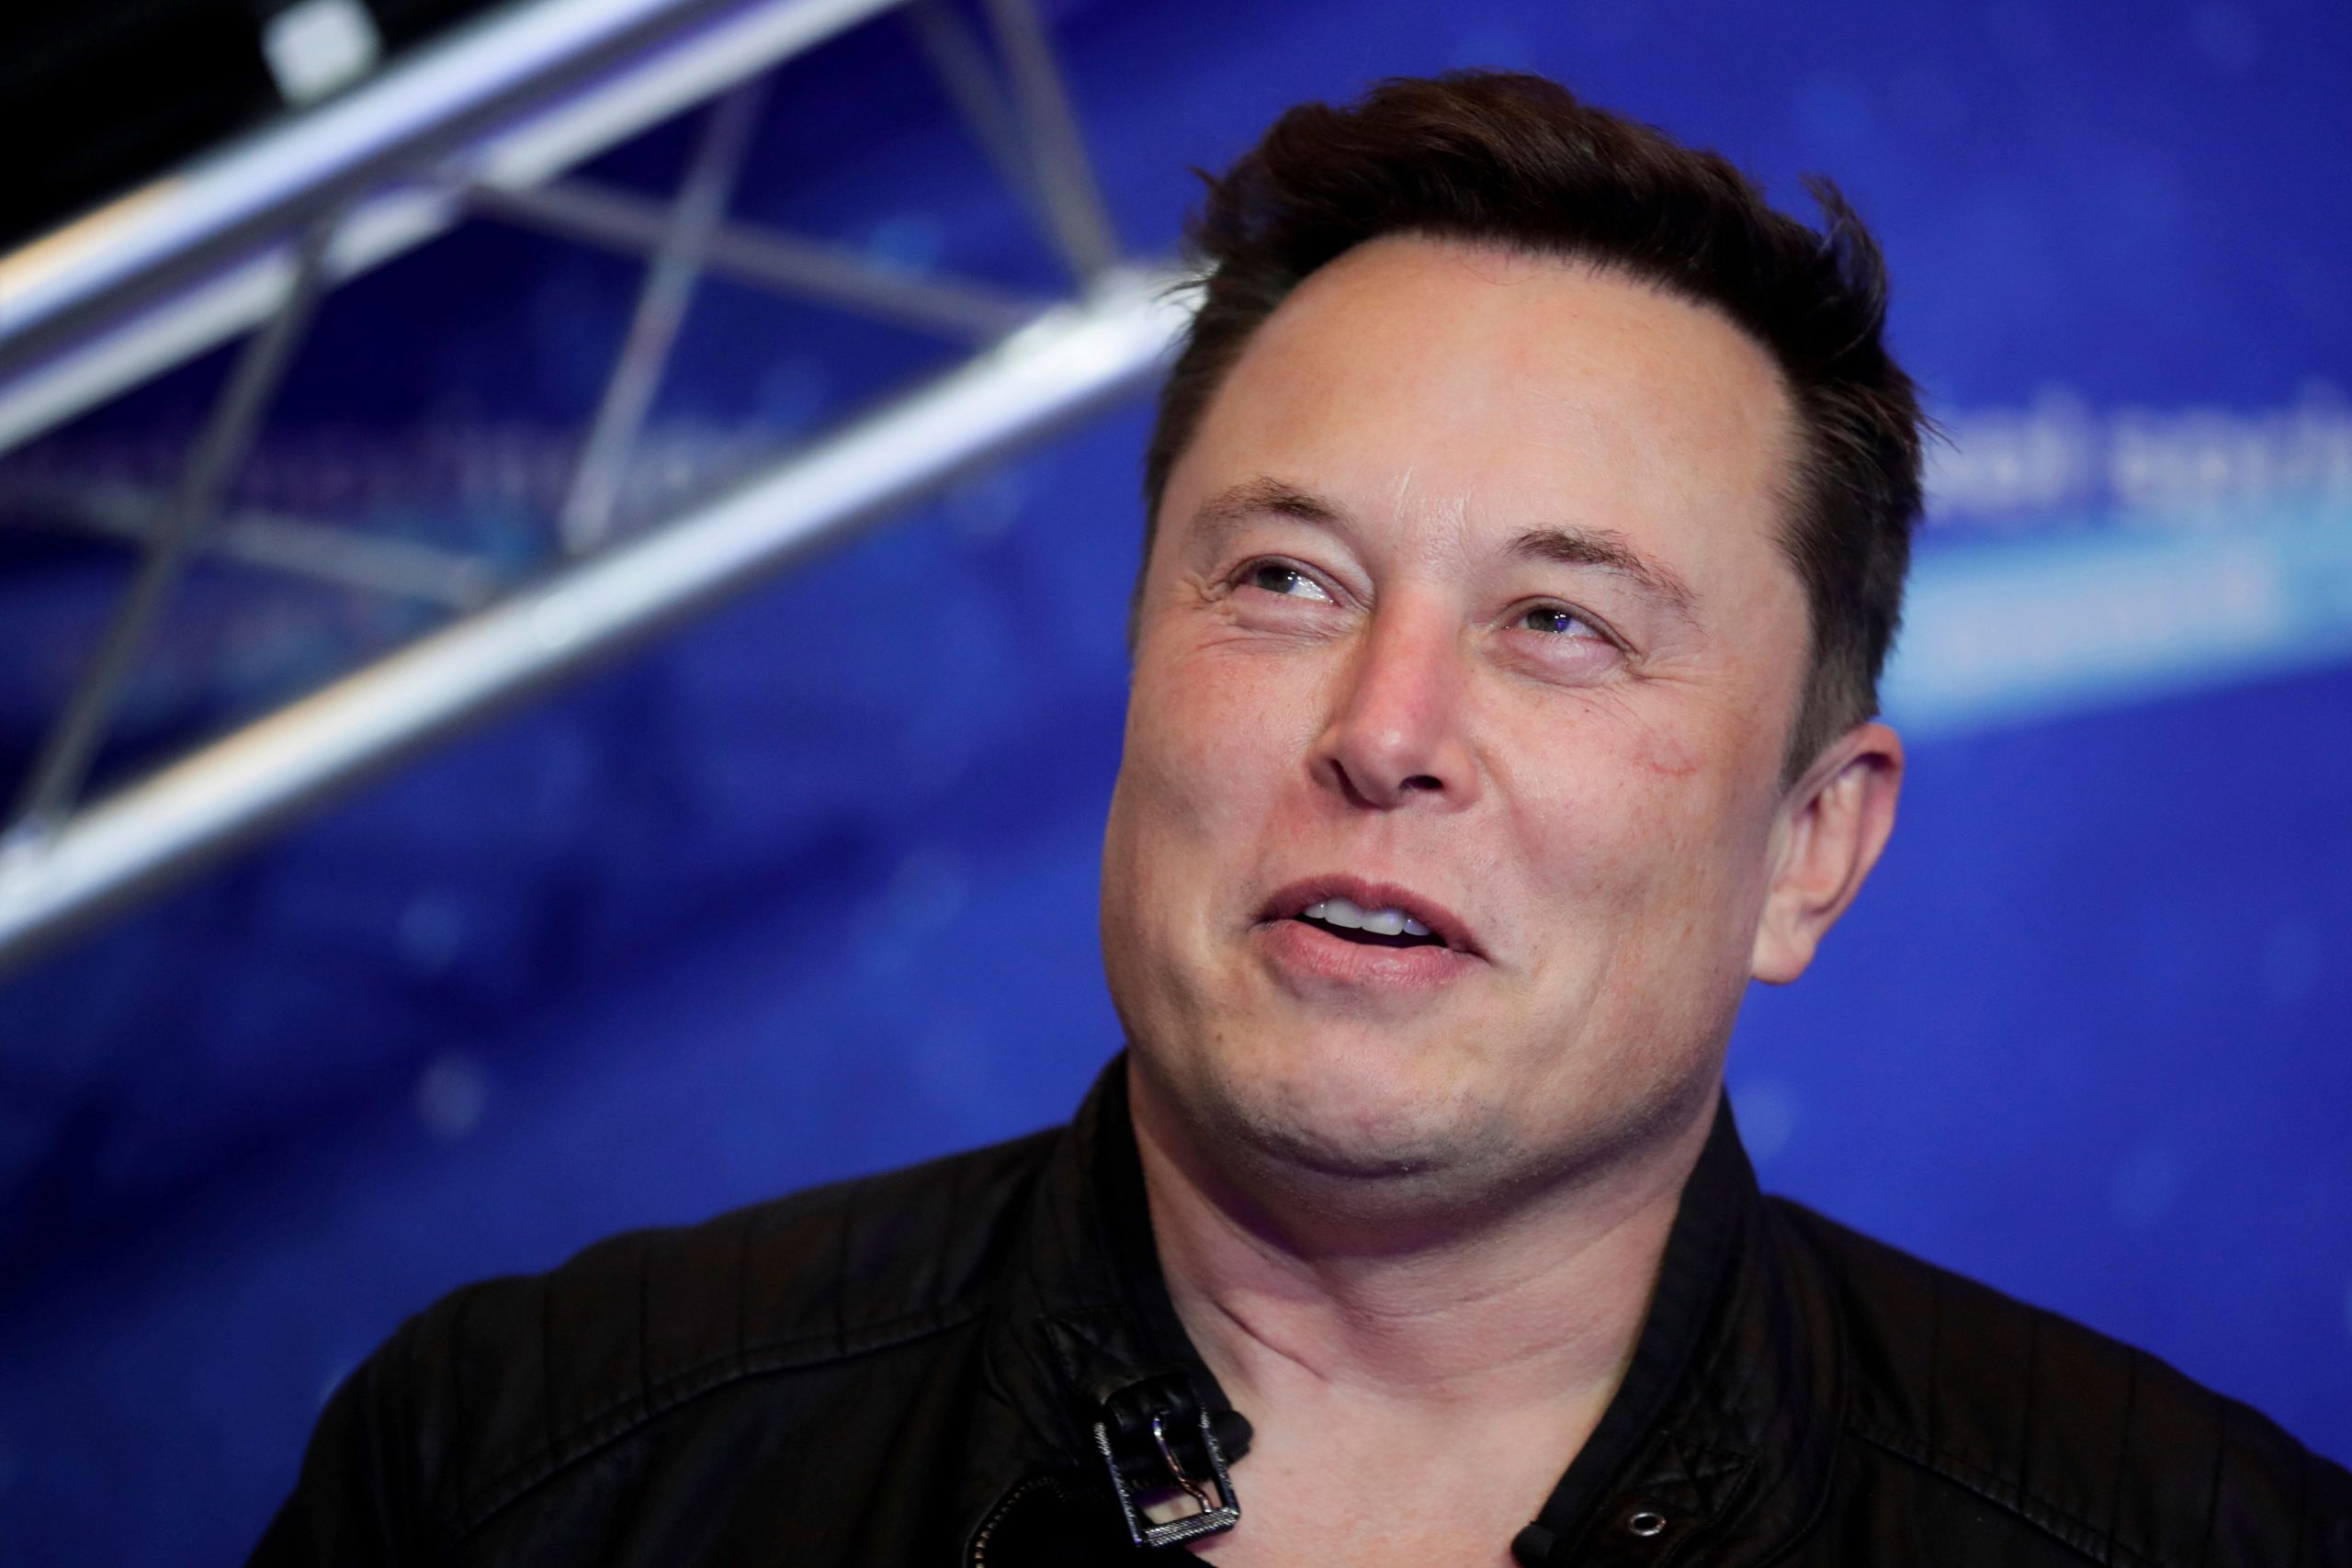 No information, no deal: Elon Musk threatens to walk away from Twitter deal